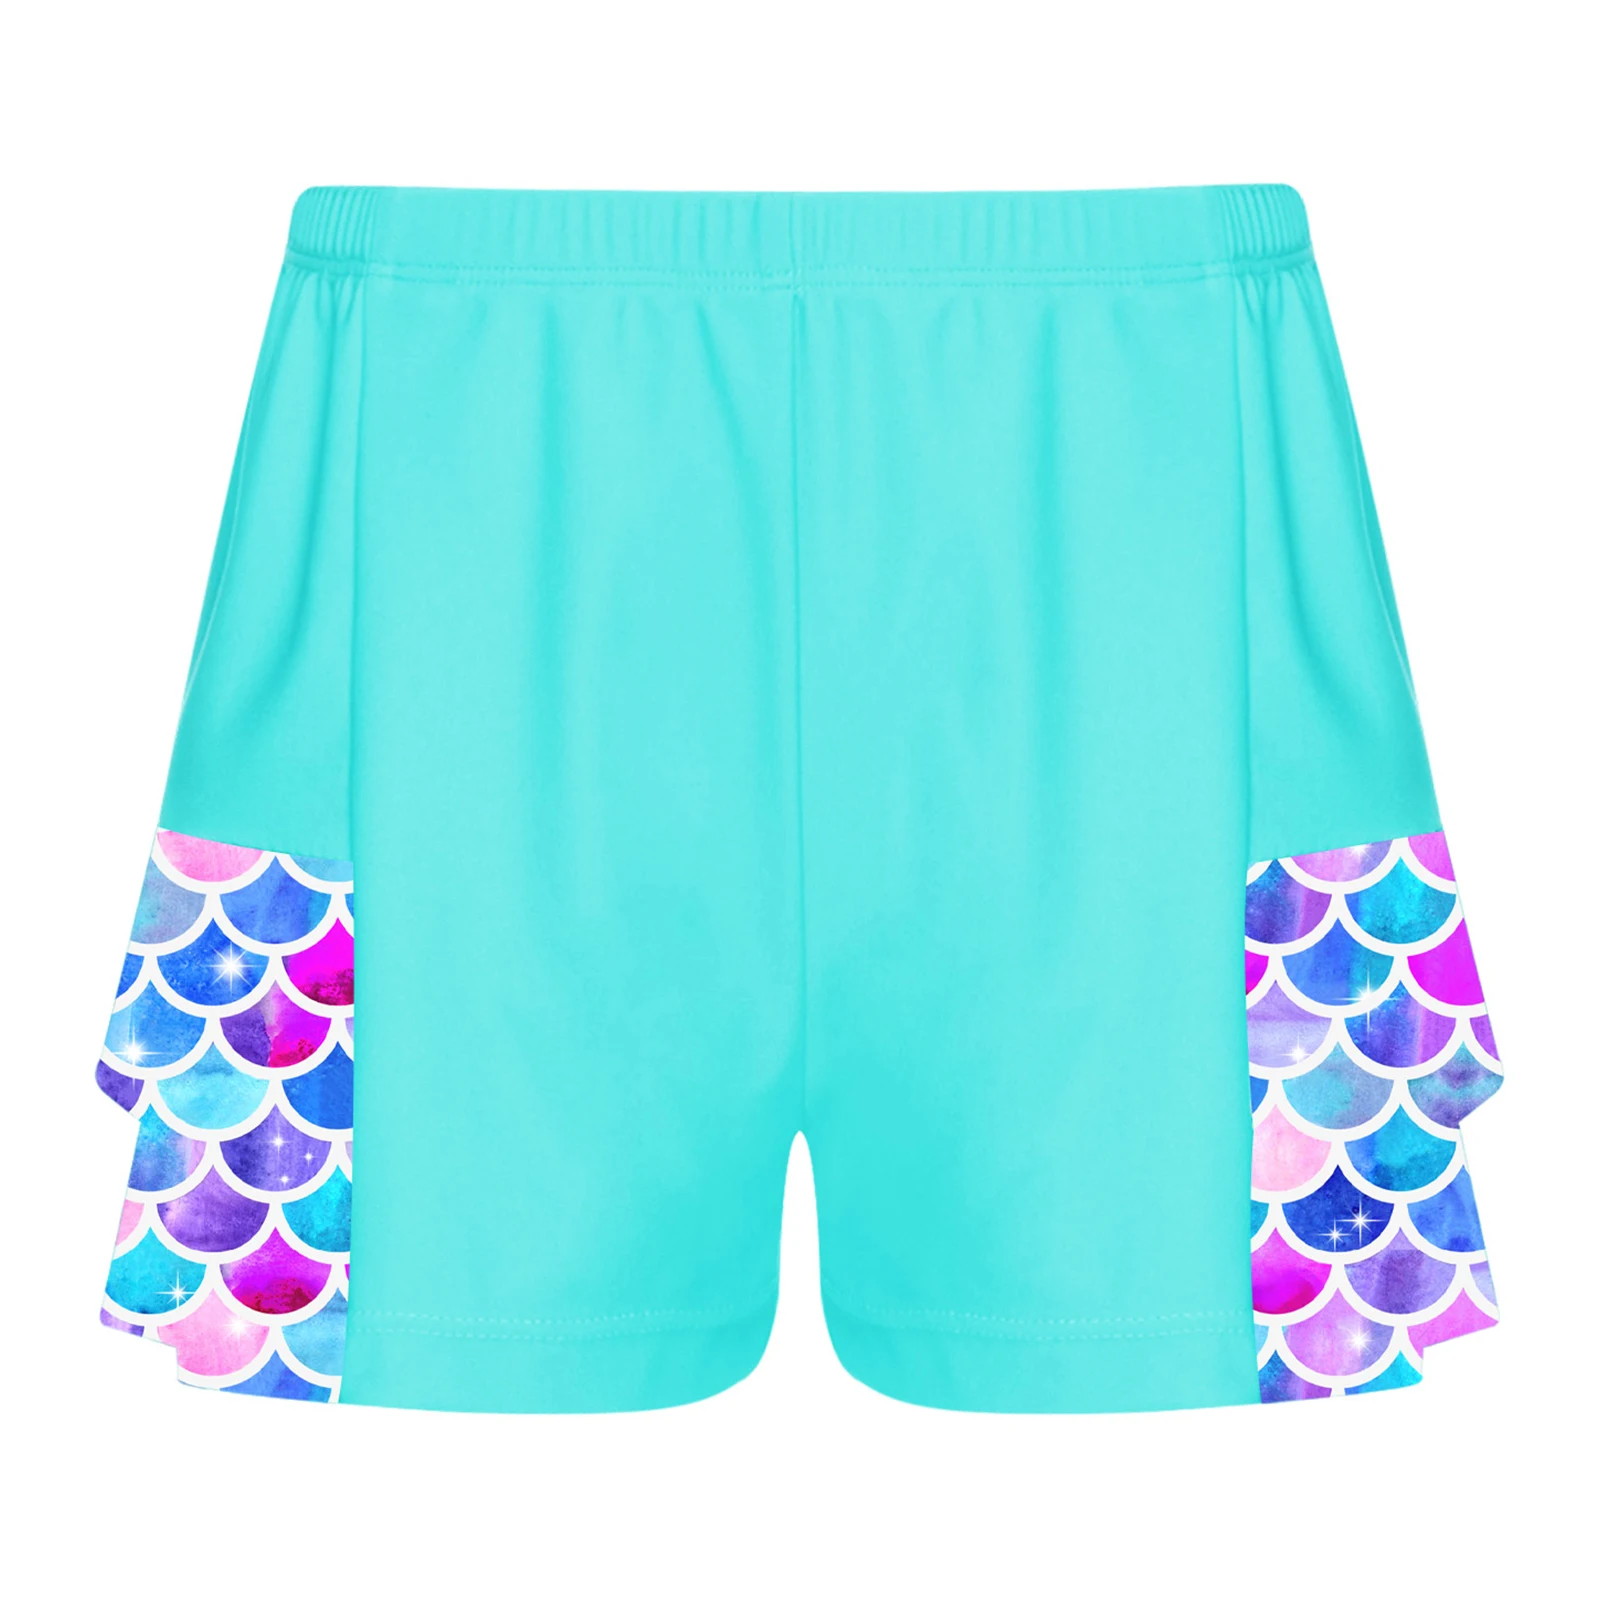 

Kids Girls Summer Swimming Trunks Swimsuit Printed Elastic Waist Shorts Double Layers Ruffle Swimwear Beachwear Surfing Shorts